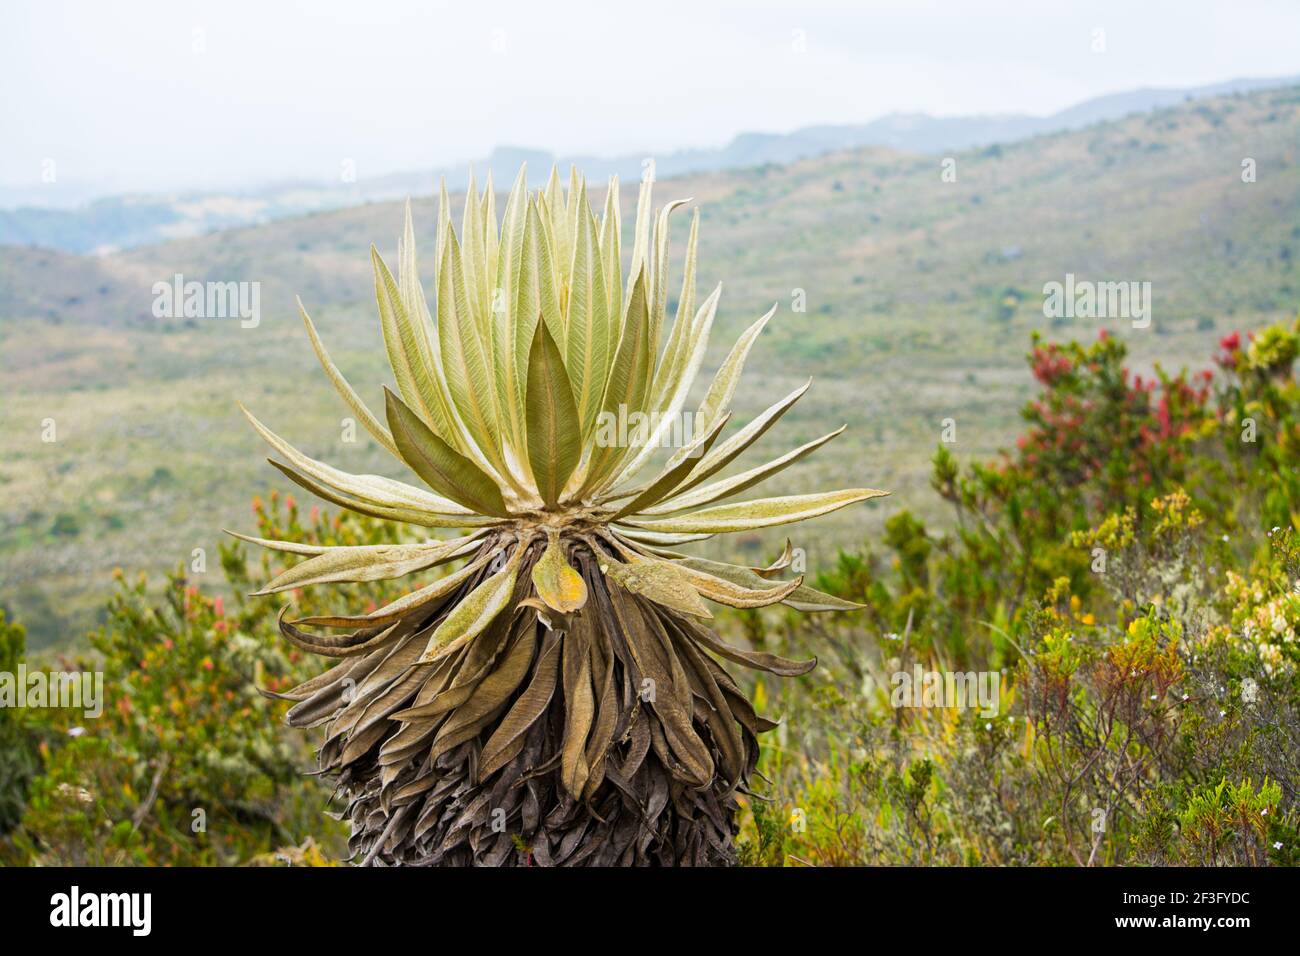 Speletia grandiflora, frailejon colombiano en un páramo, foto de un frailejon en un páramo en la montaña Foto de stock